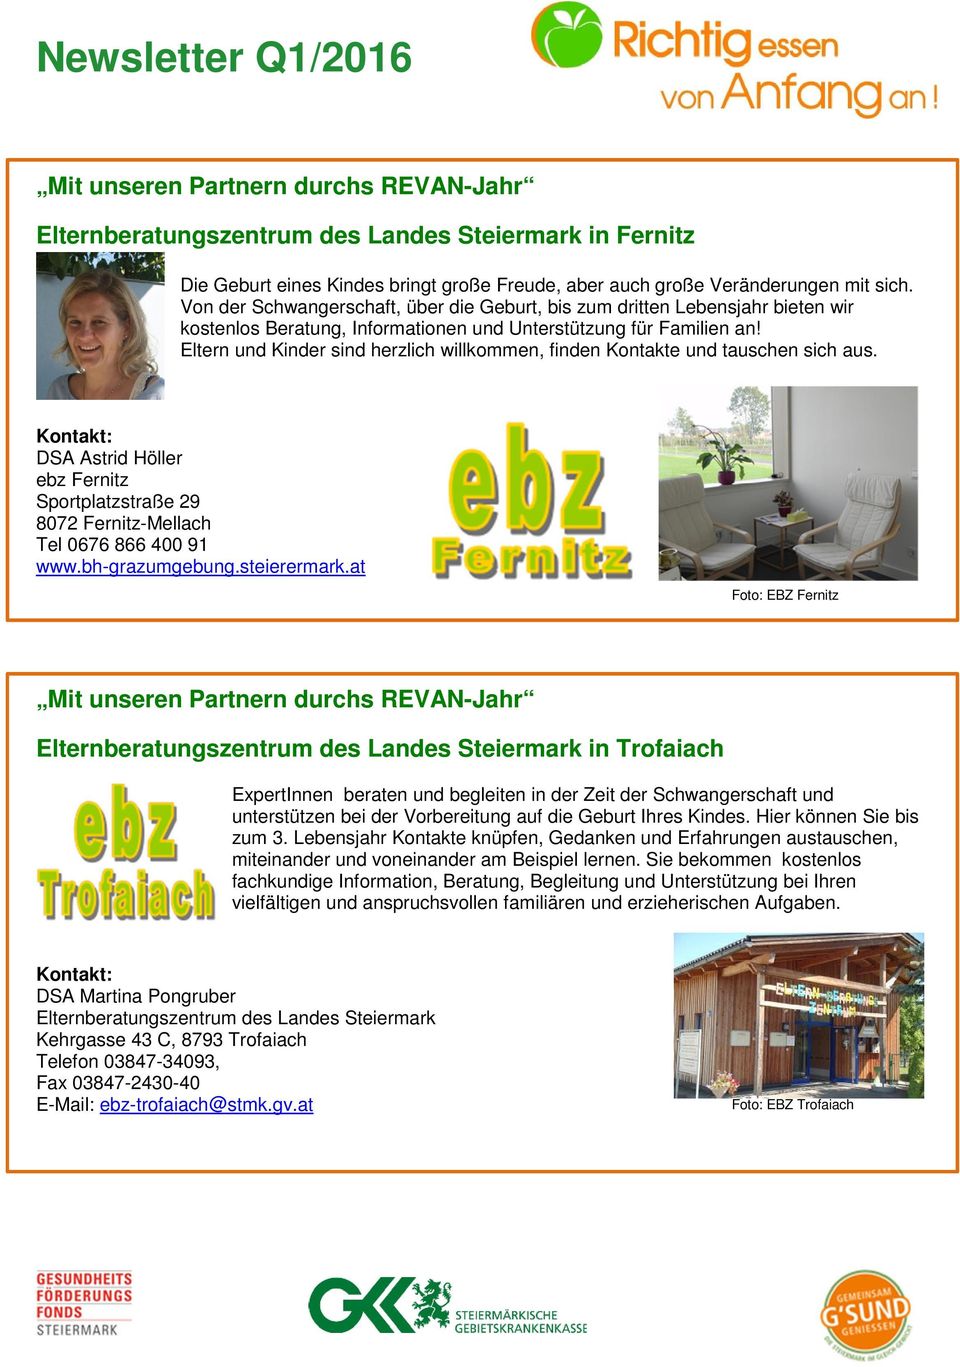 Eltern und Kinder sind herzlich willkommen, finden Kontakte und tauschen sich aus. DSA Astrid Höller ebz Fernitz Sportplatzstraße 29 8072 Fernitz-Mellach Tel 0676 866 400 91 www.bh-grazumgebung.